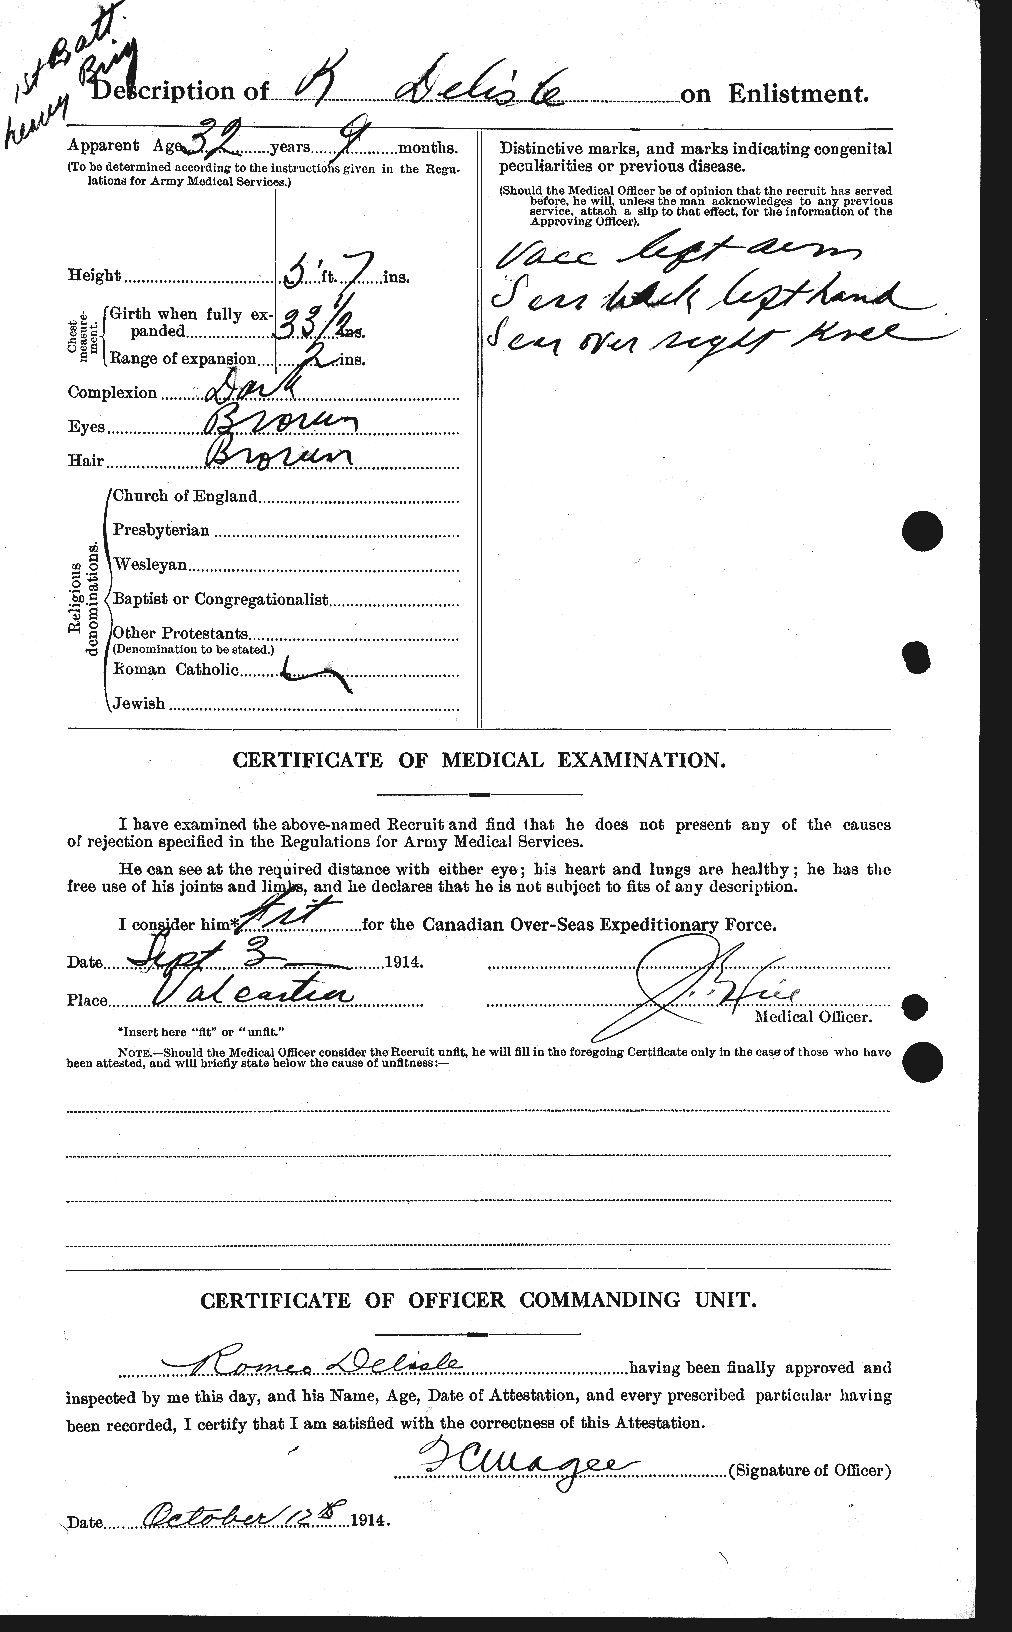 Dossiers du Personnel de la Première Guerre mondiale - CEC 286643b